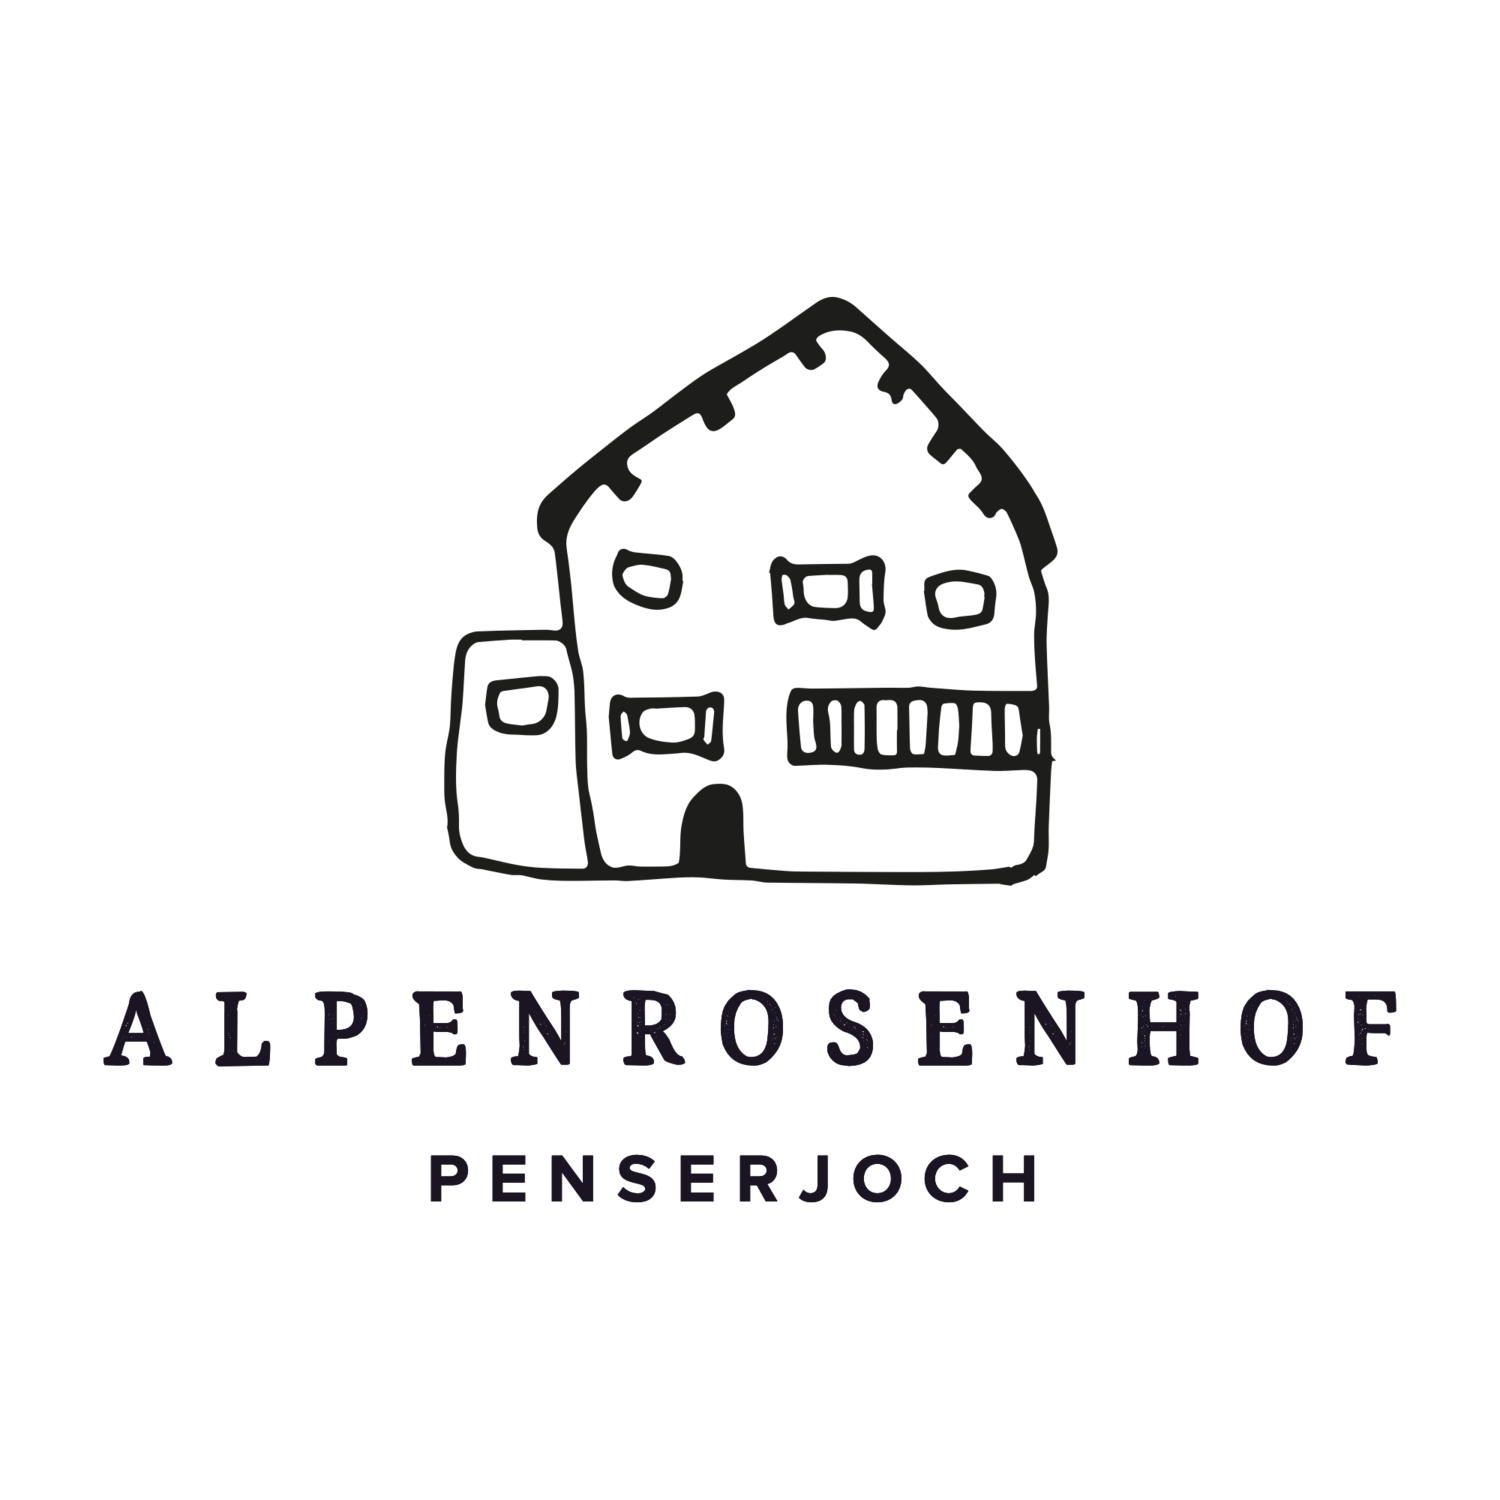 Alpenrosenhof - Penser Joch